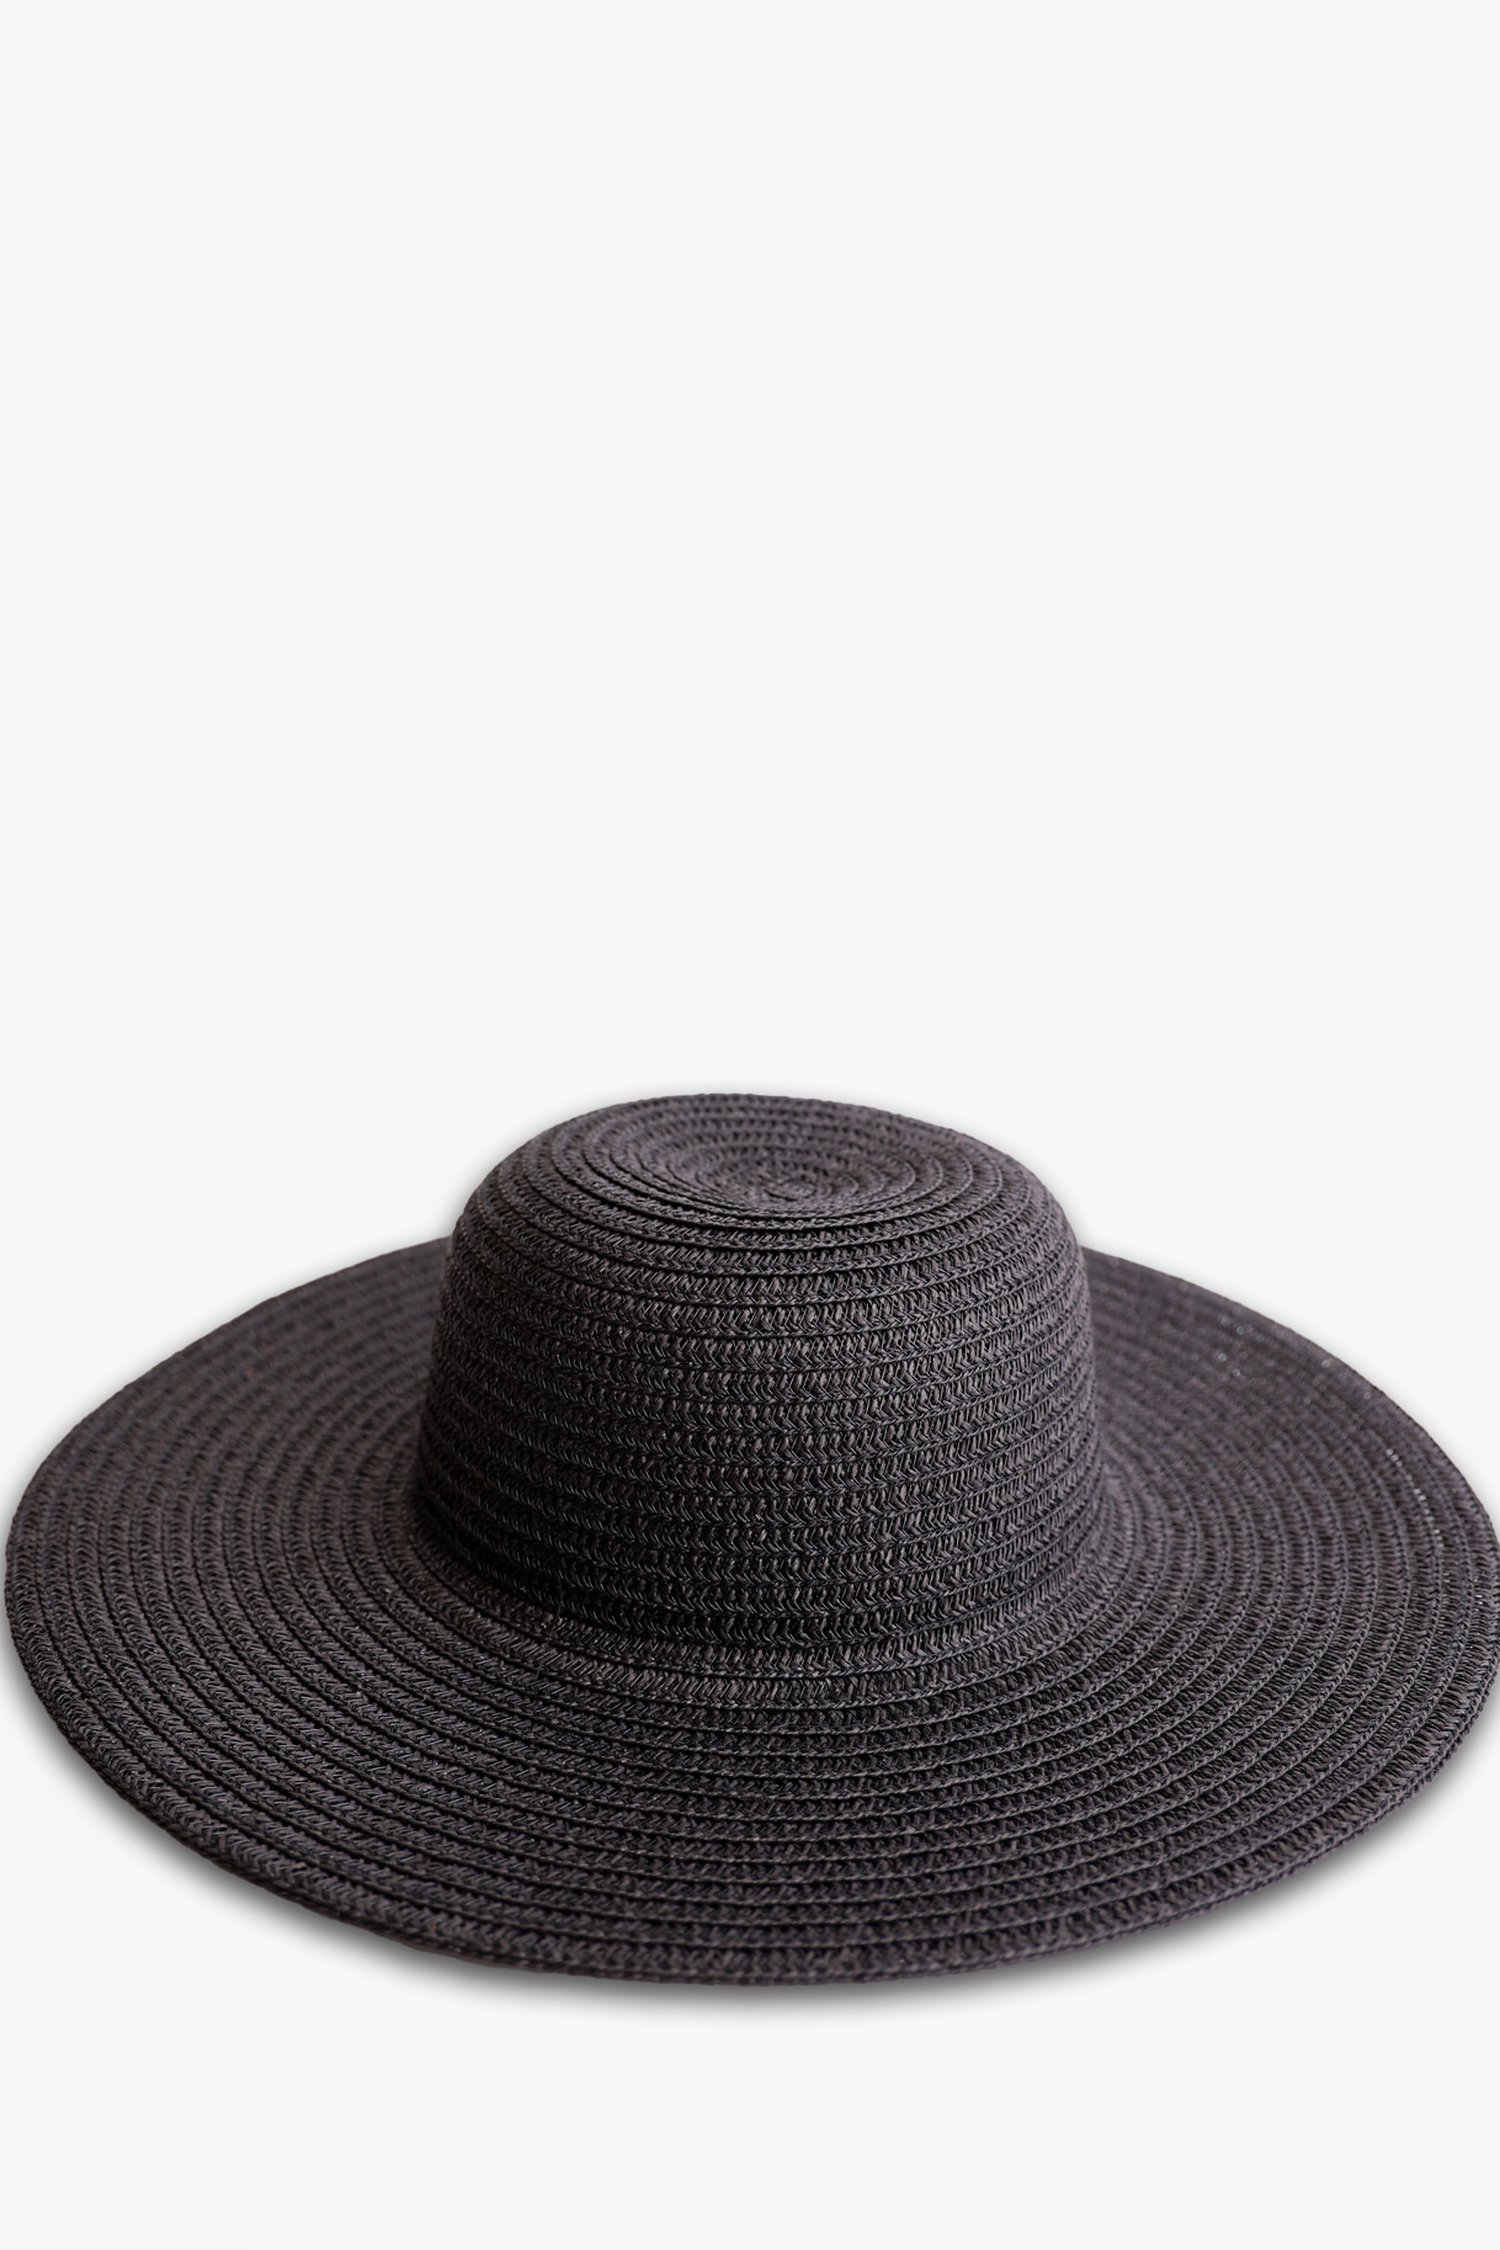 Zwarte hoed  van Modeno voor Dames